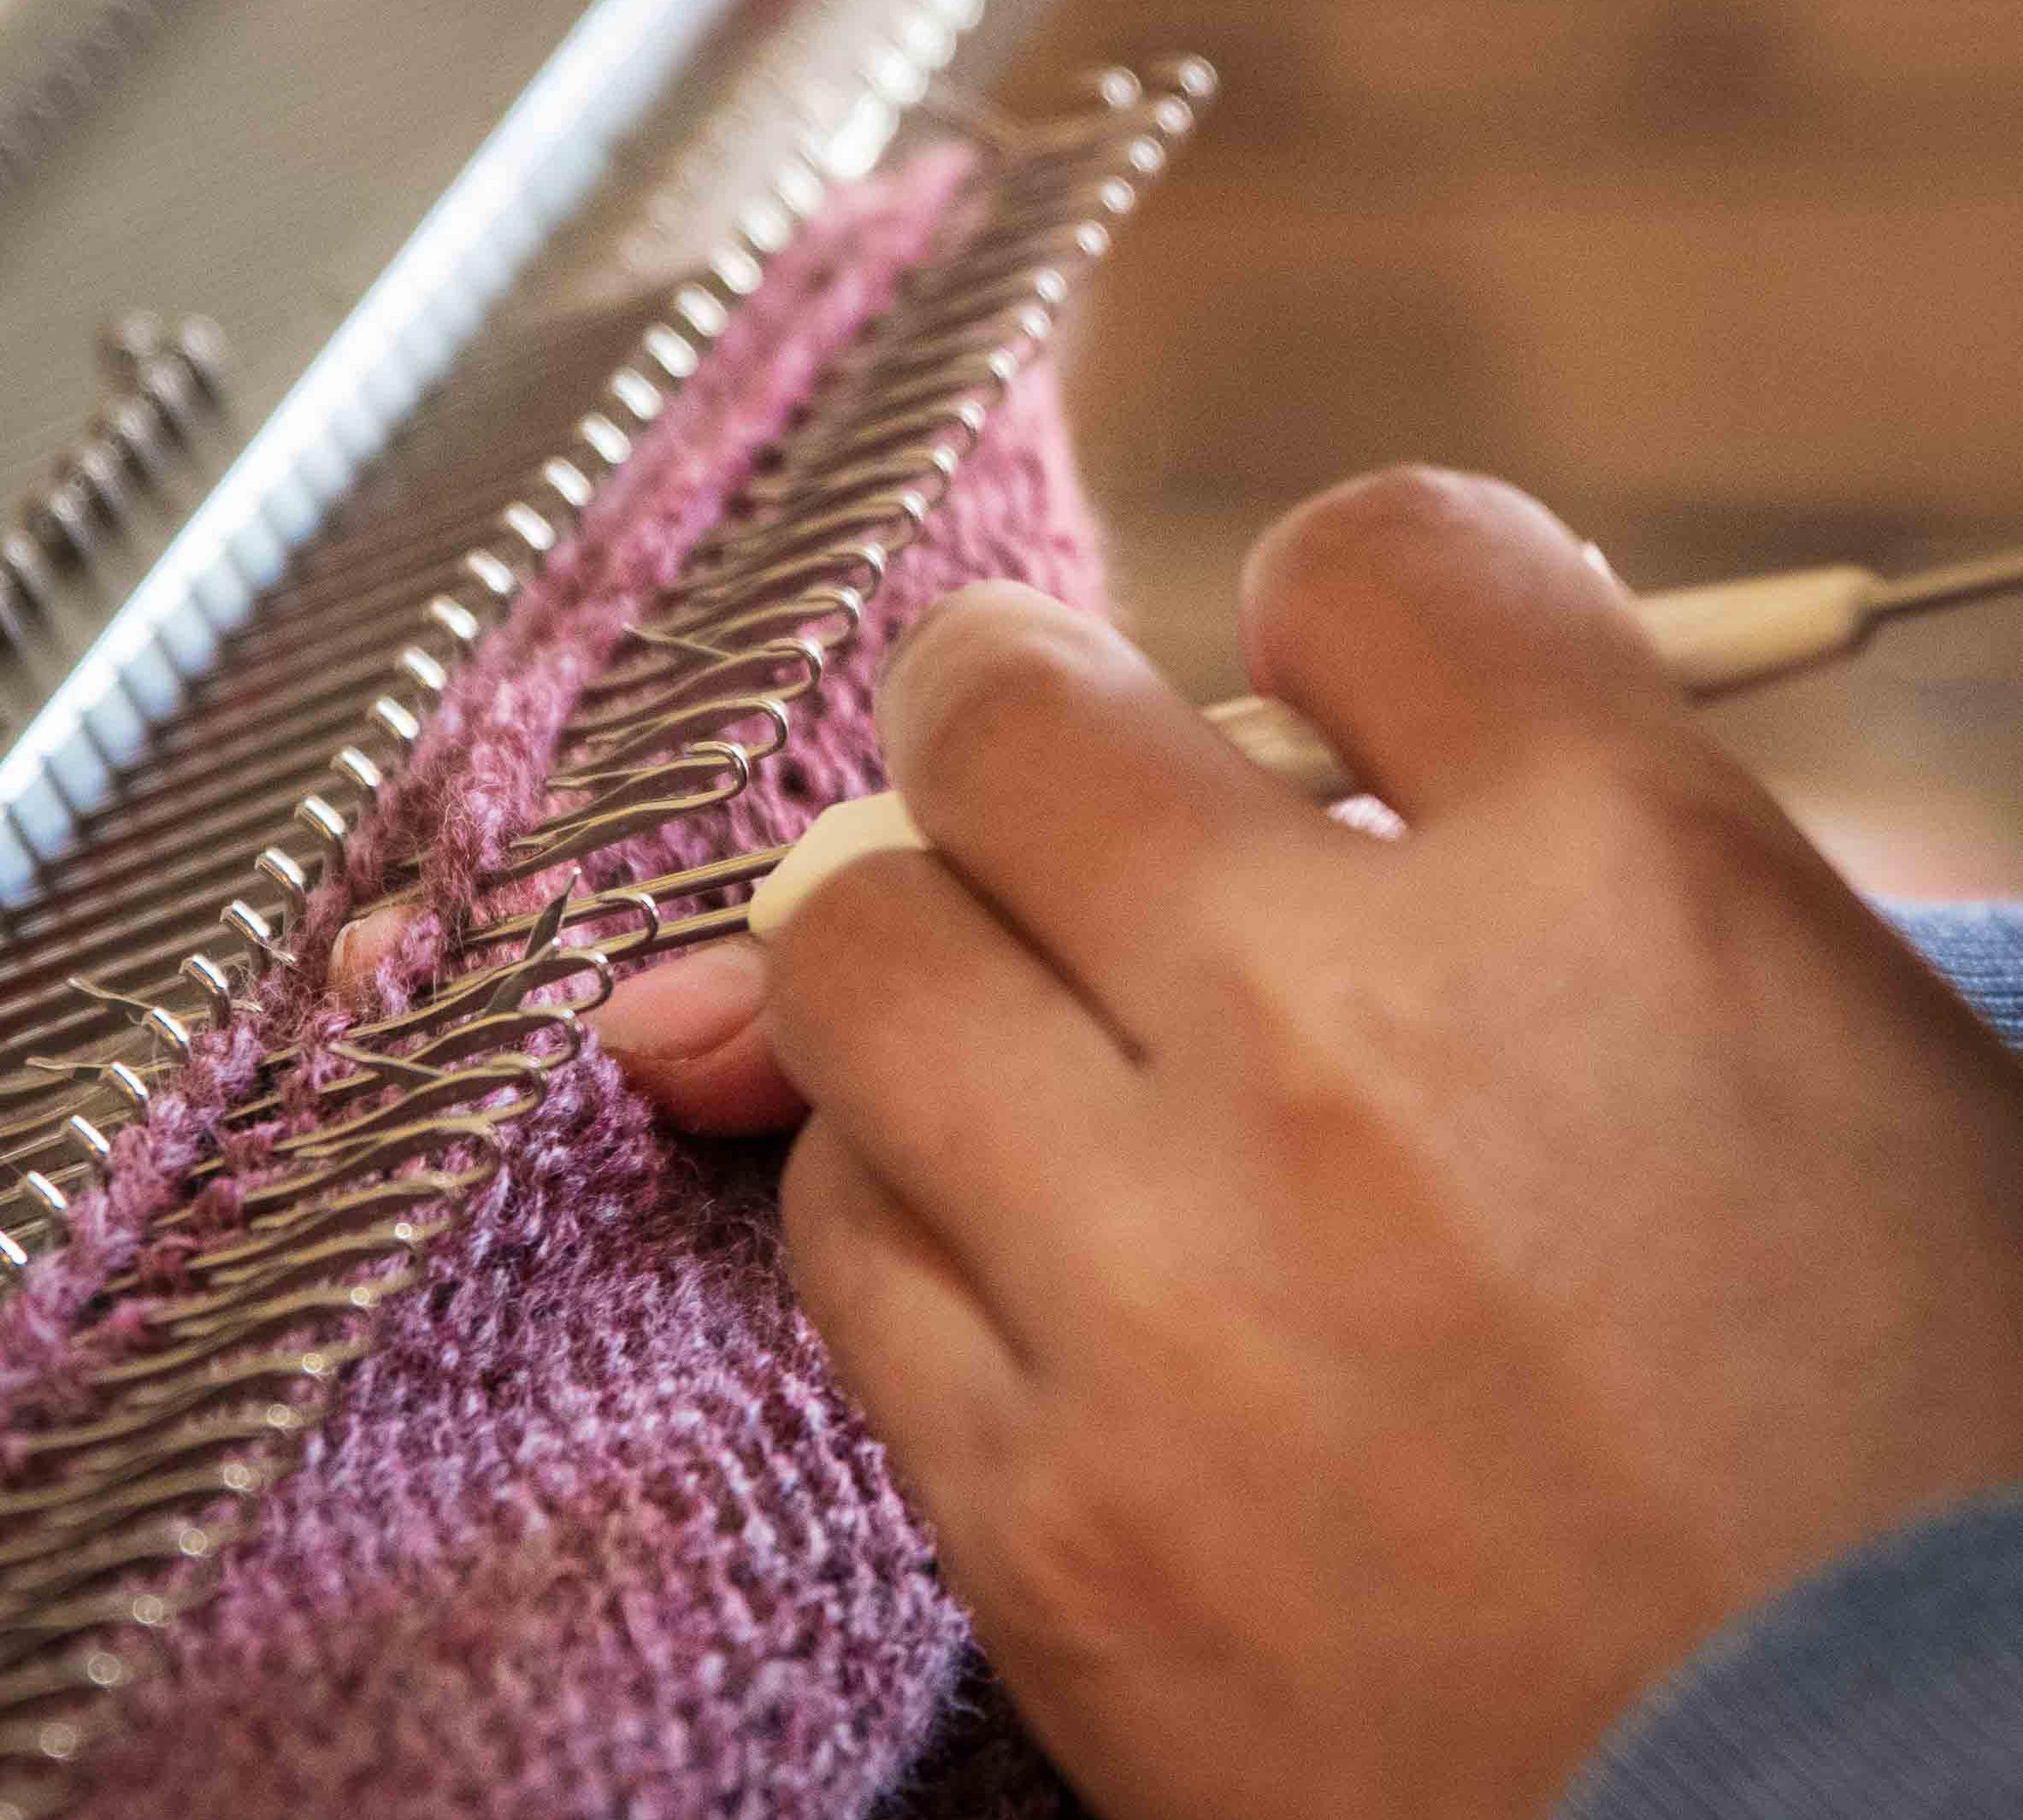 Fertigung Handarbeit Textil abschließen